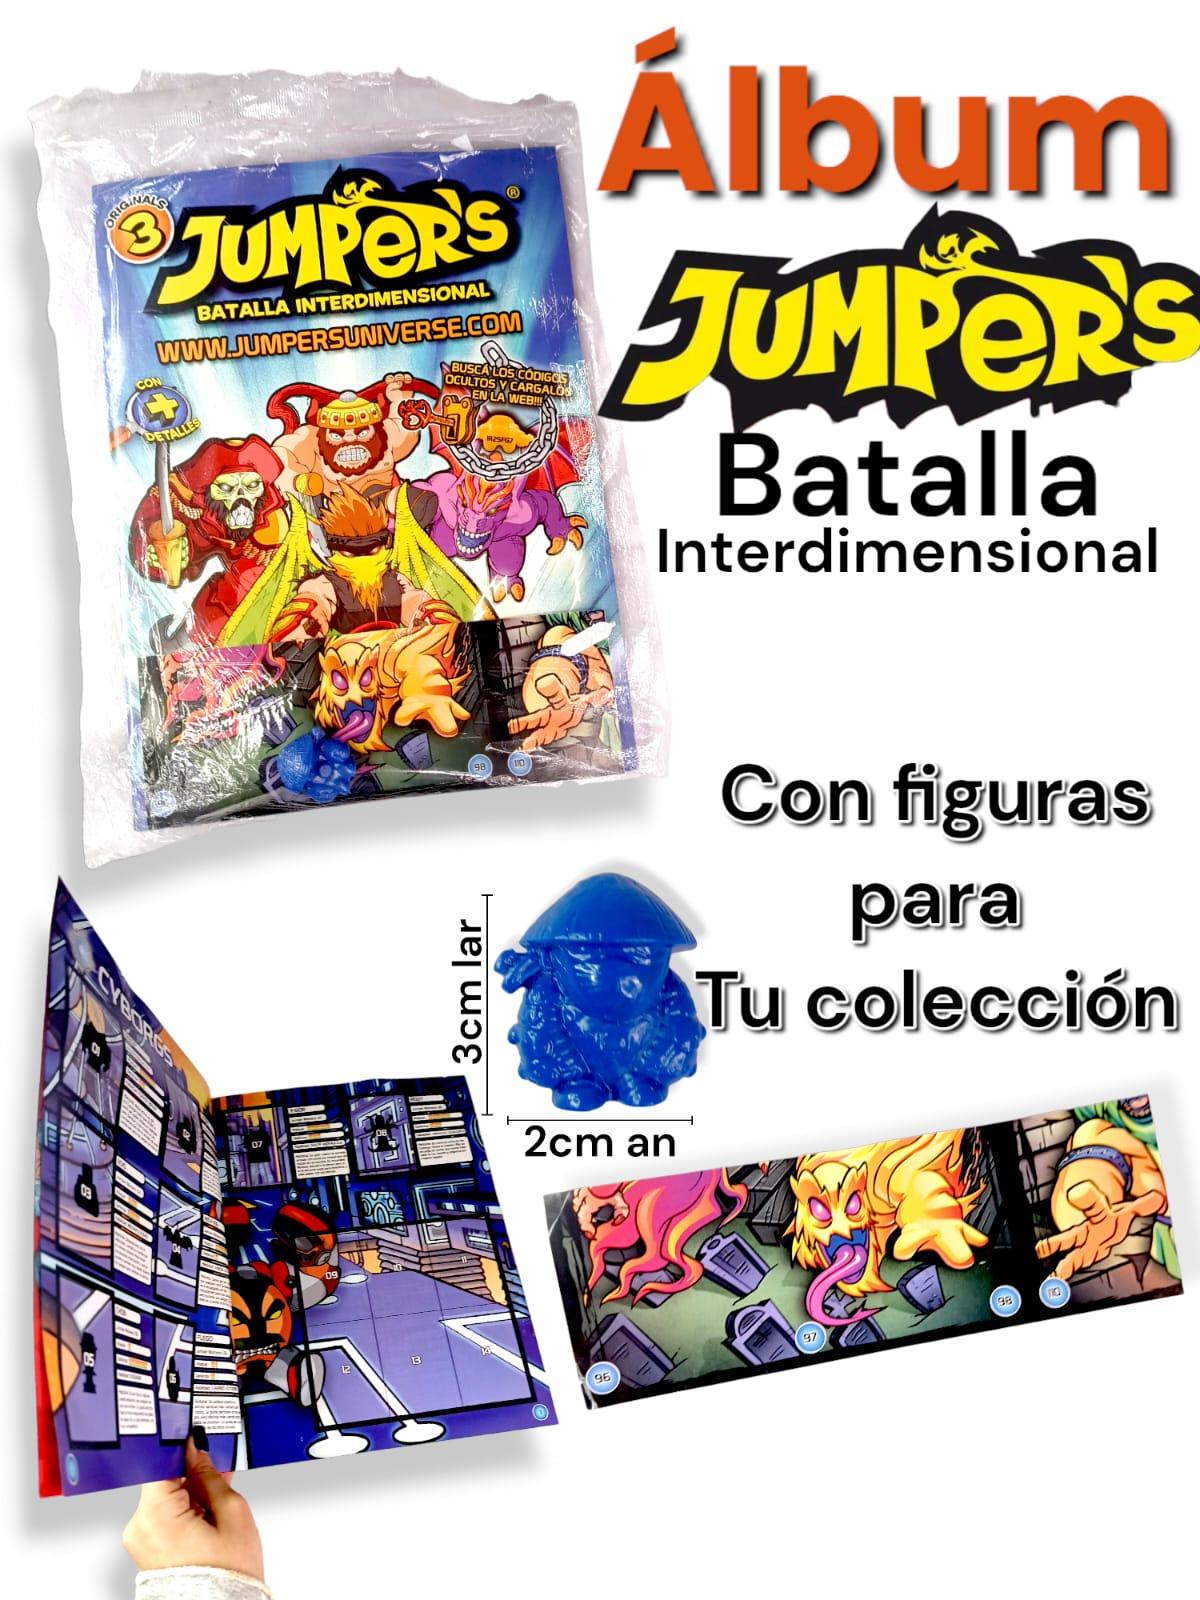 Jumpers Batalla Interdimensional  ALBUM y FIGURITAS